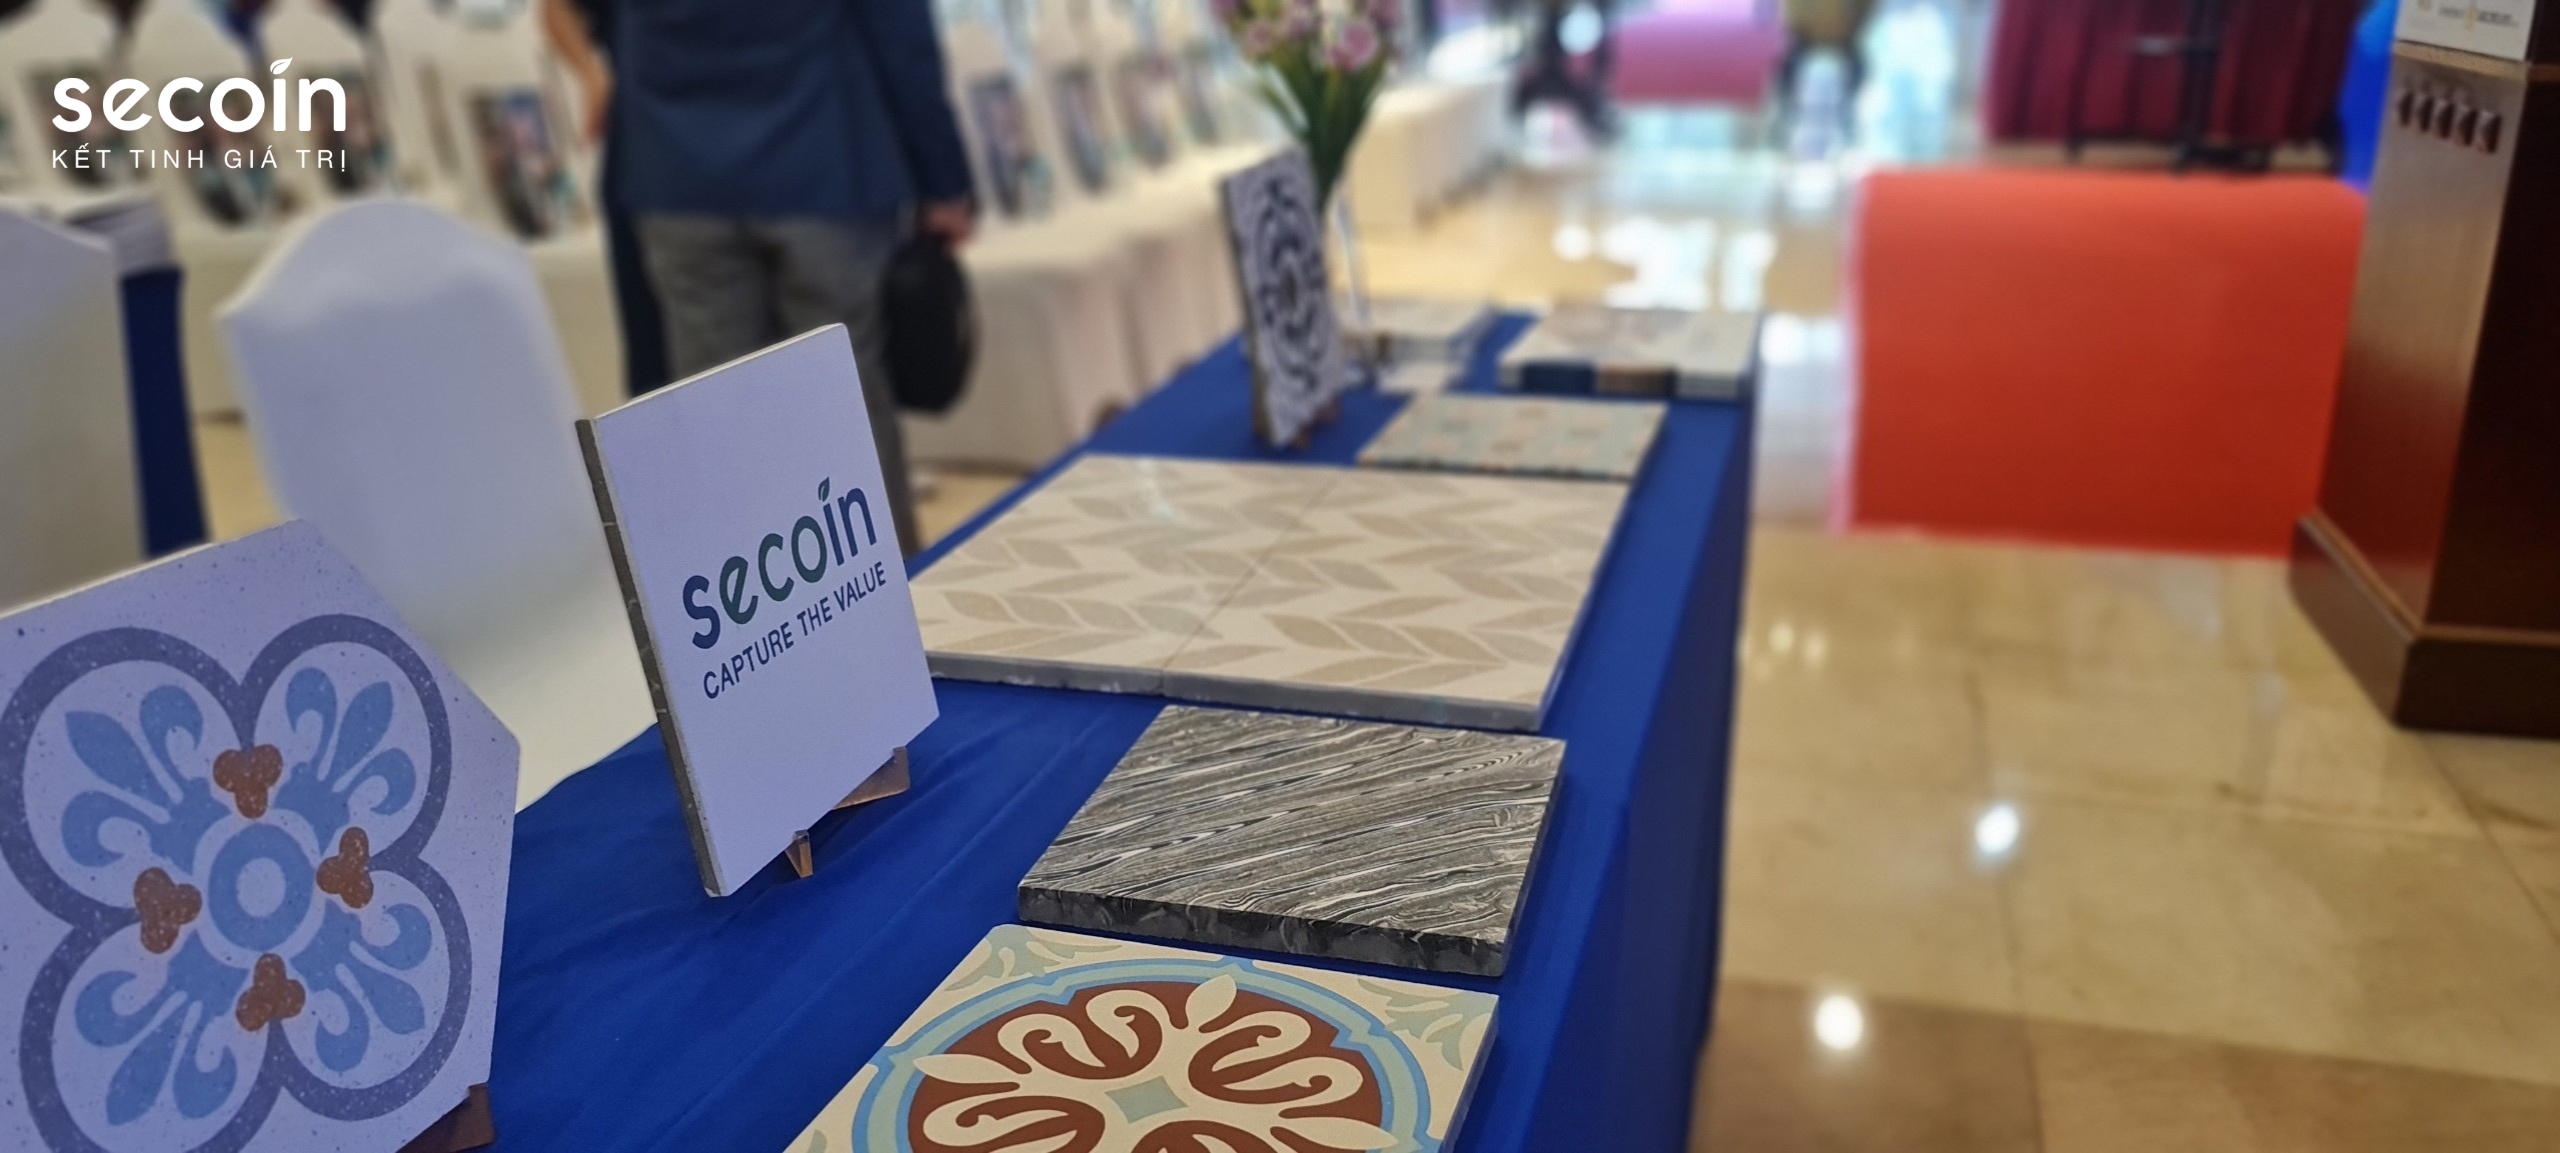 Secoin tham dự chương trình Kết nối cùng doanh nghiệp xây dựng B2B